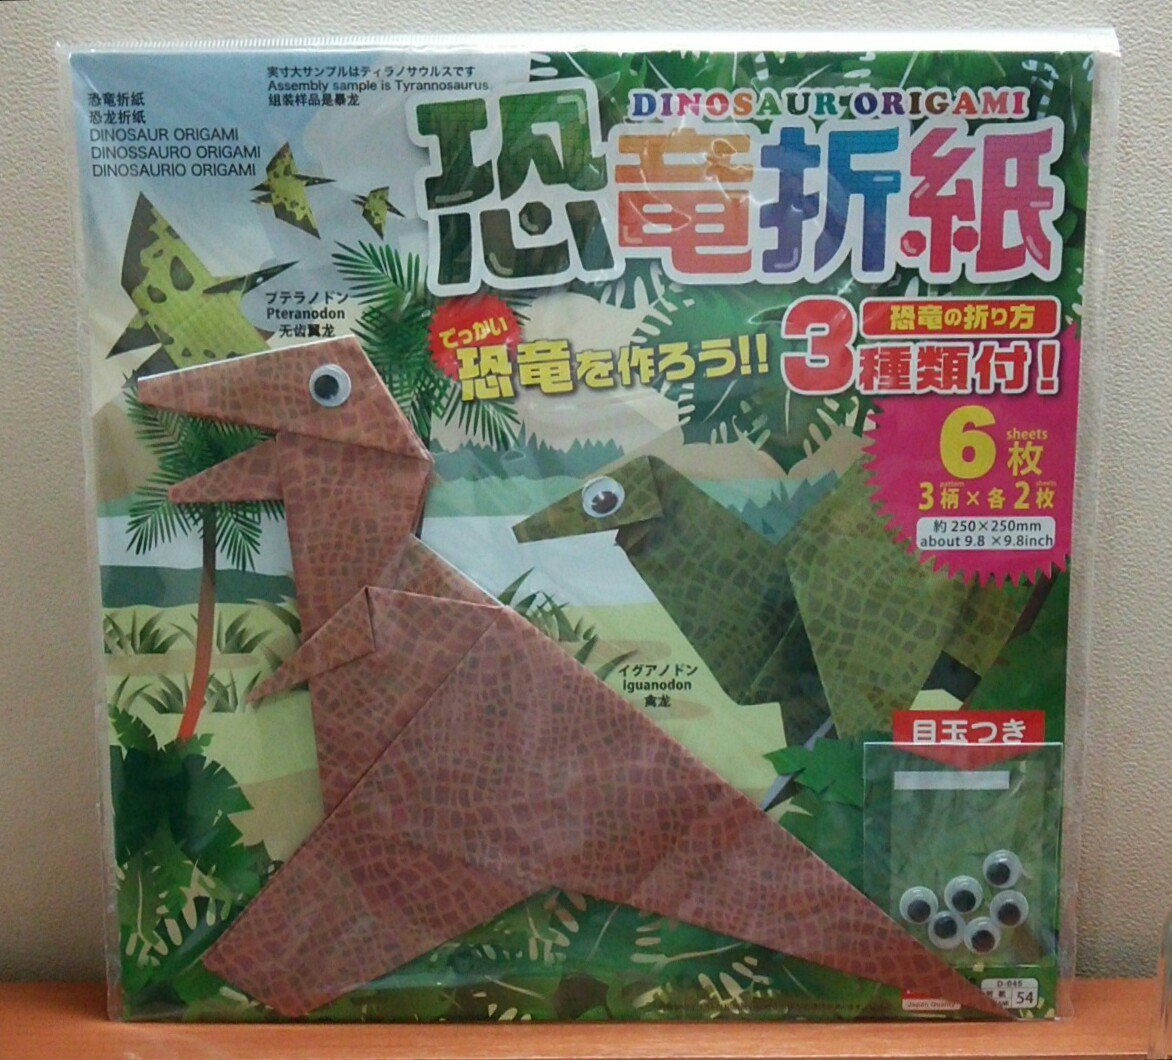 恐竜おもちゃの博物館 広島のダイソーで高井弘明さんデザインの恐竜折紙 108円 ２種類をゲット 折紙が恐竜柄になっているのが楽しー T Co Qaiuaxoti0